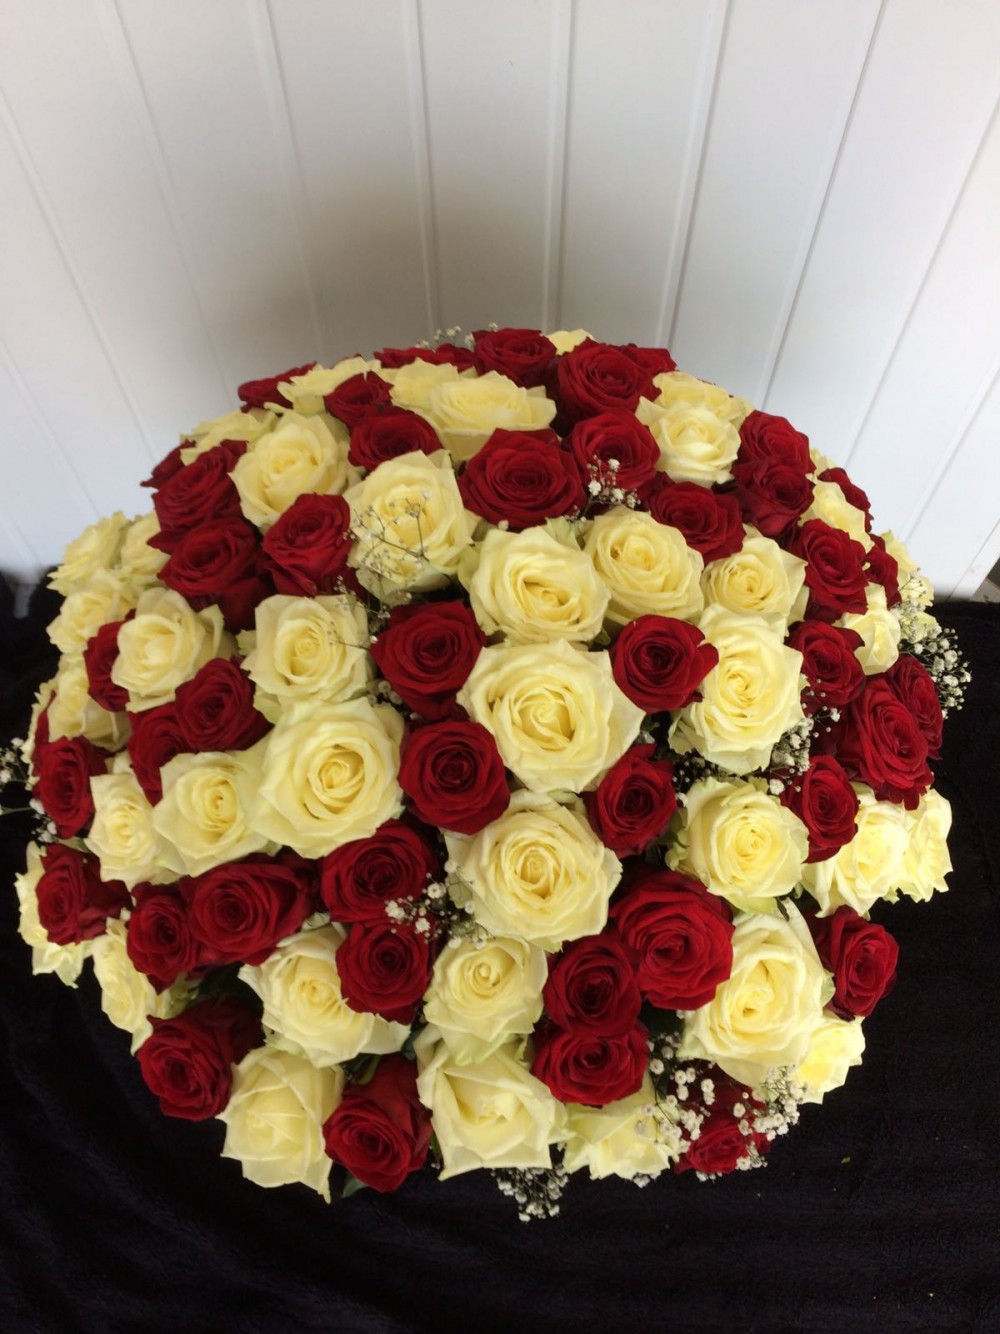 100 Red & White Roses